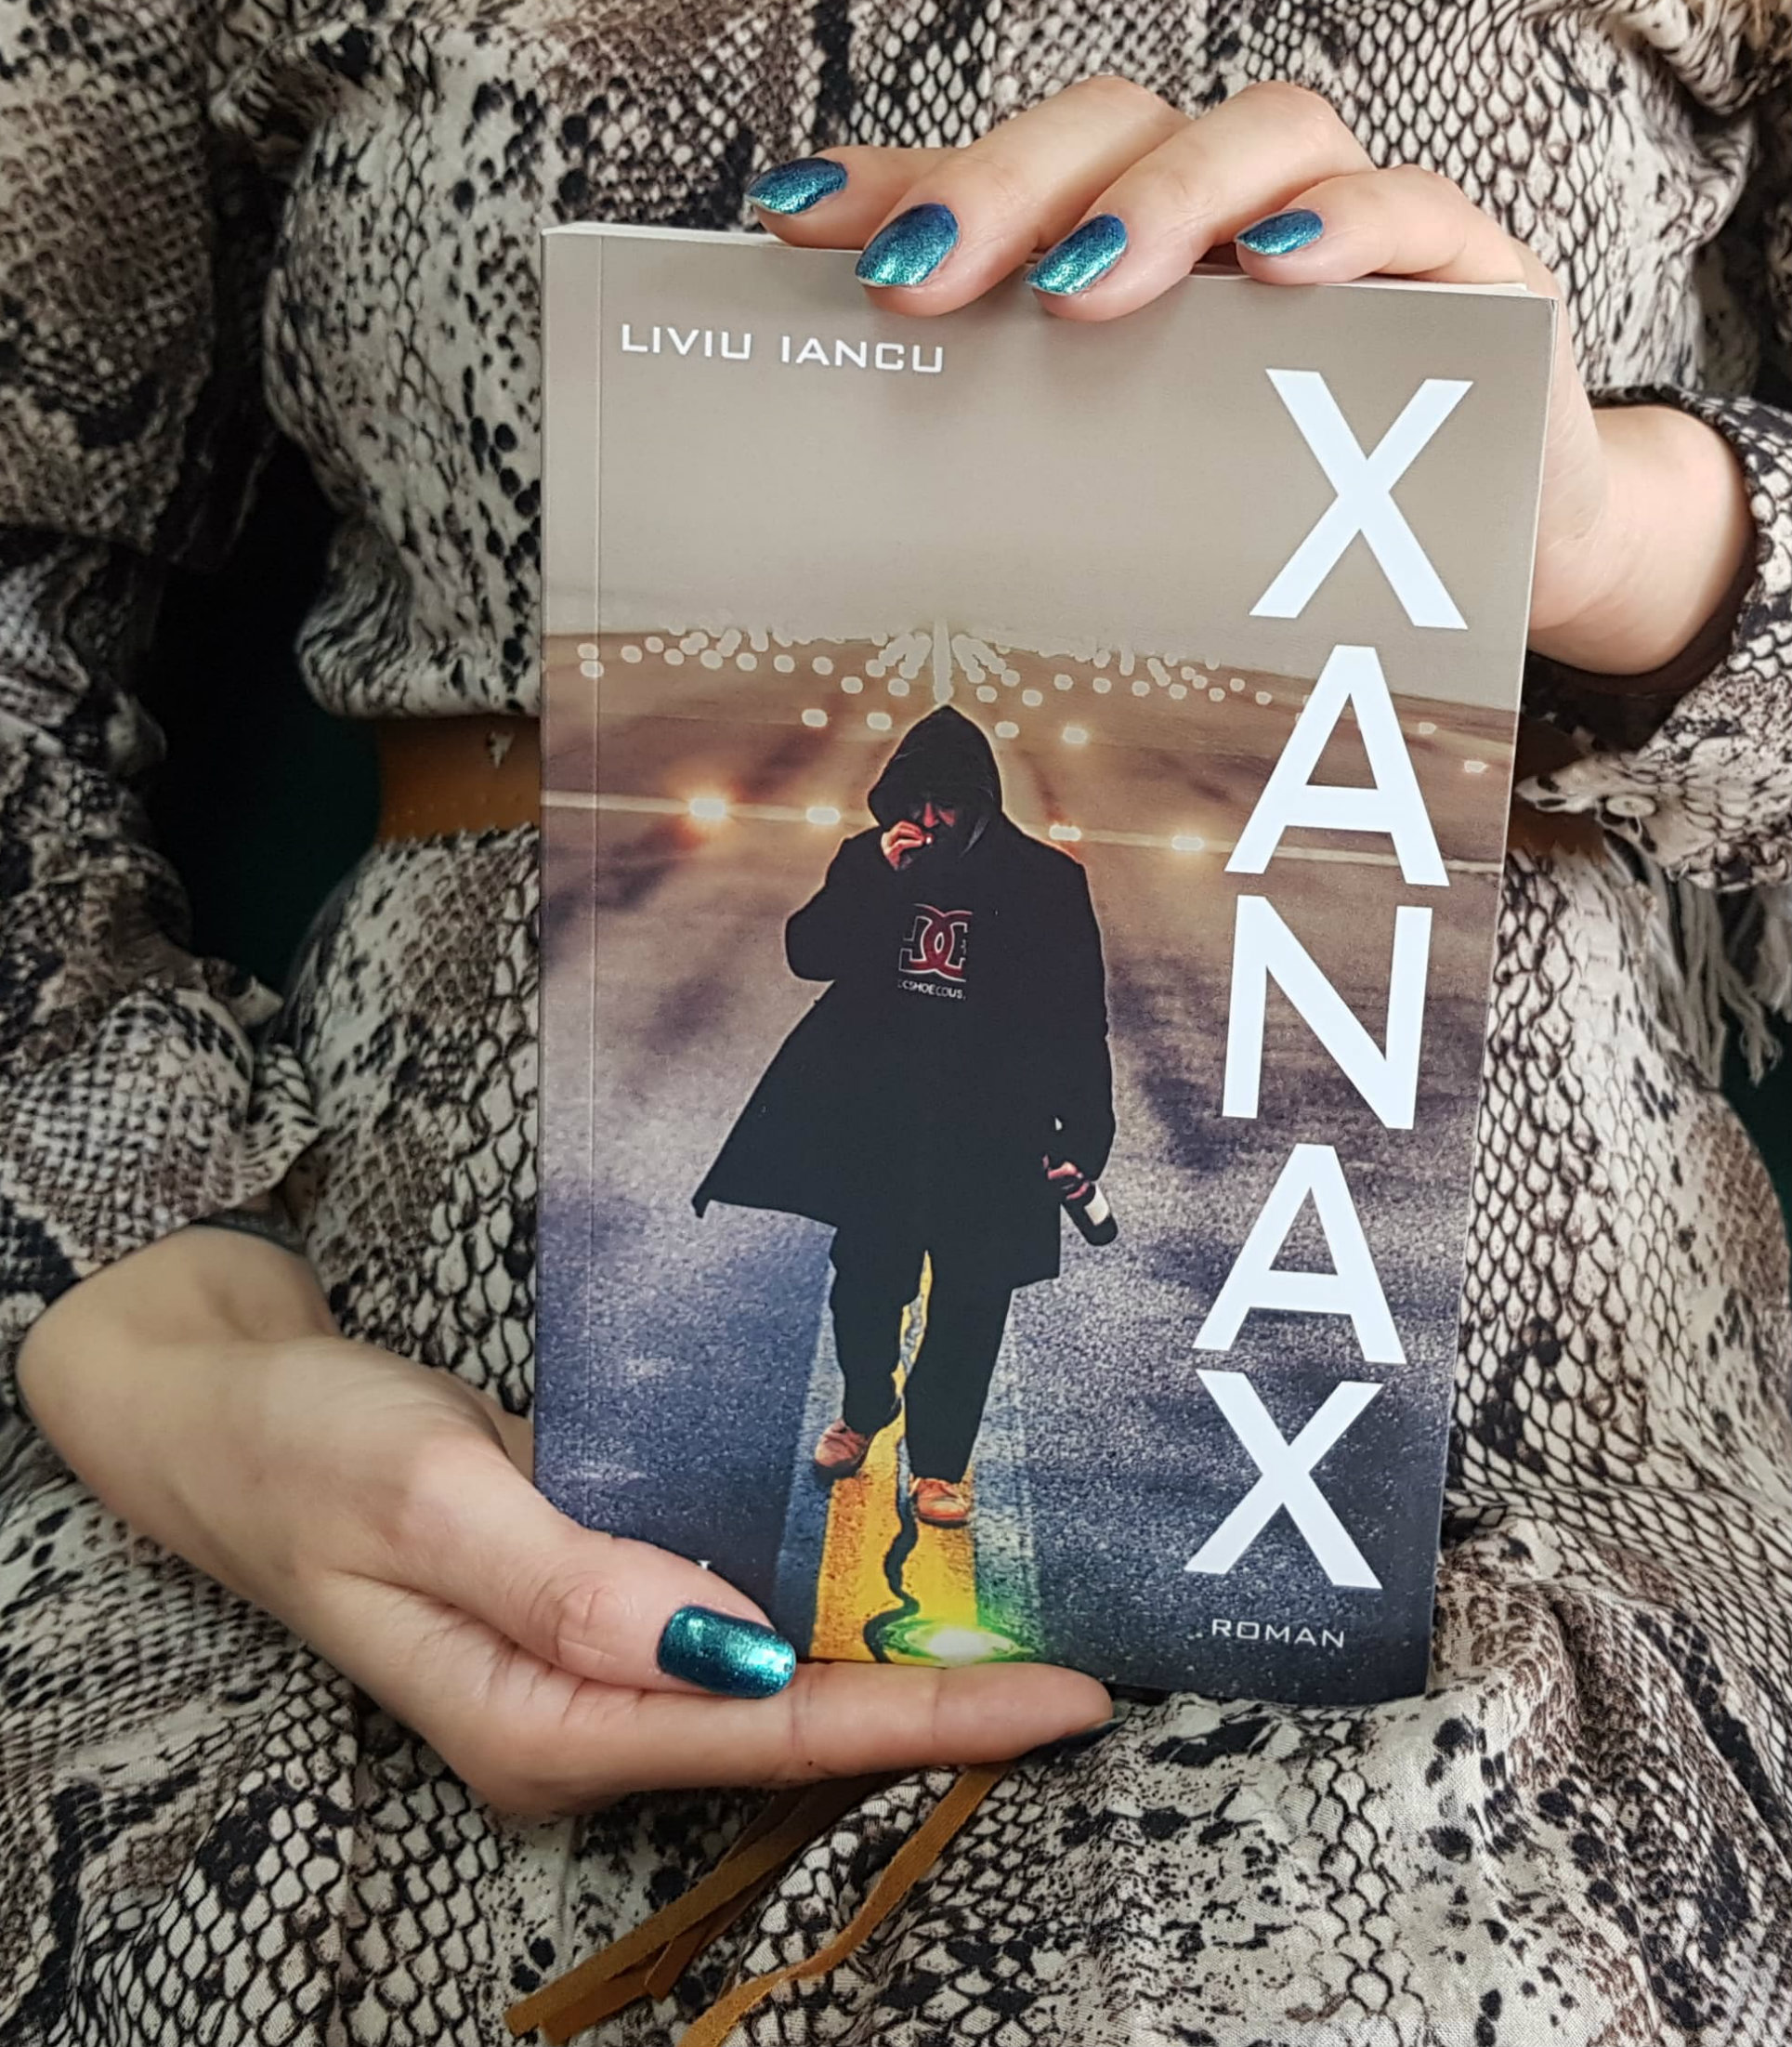 Misfortune Countless relax Tipul care tratează impostura din politica și presa românească cu Xanax